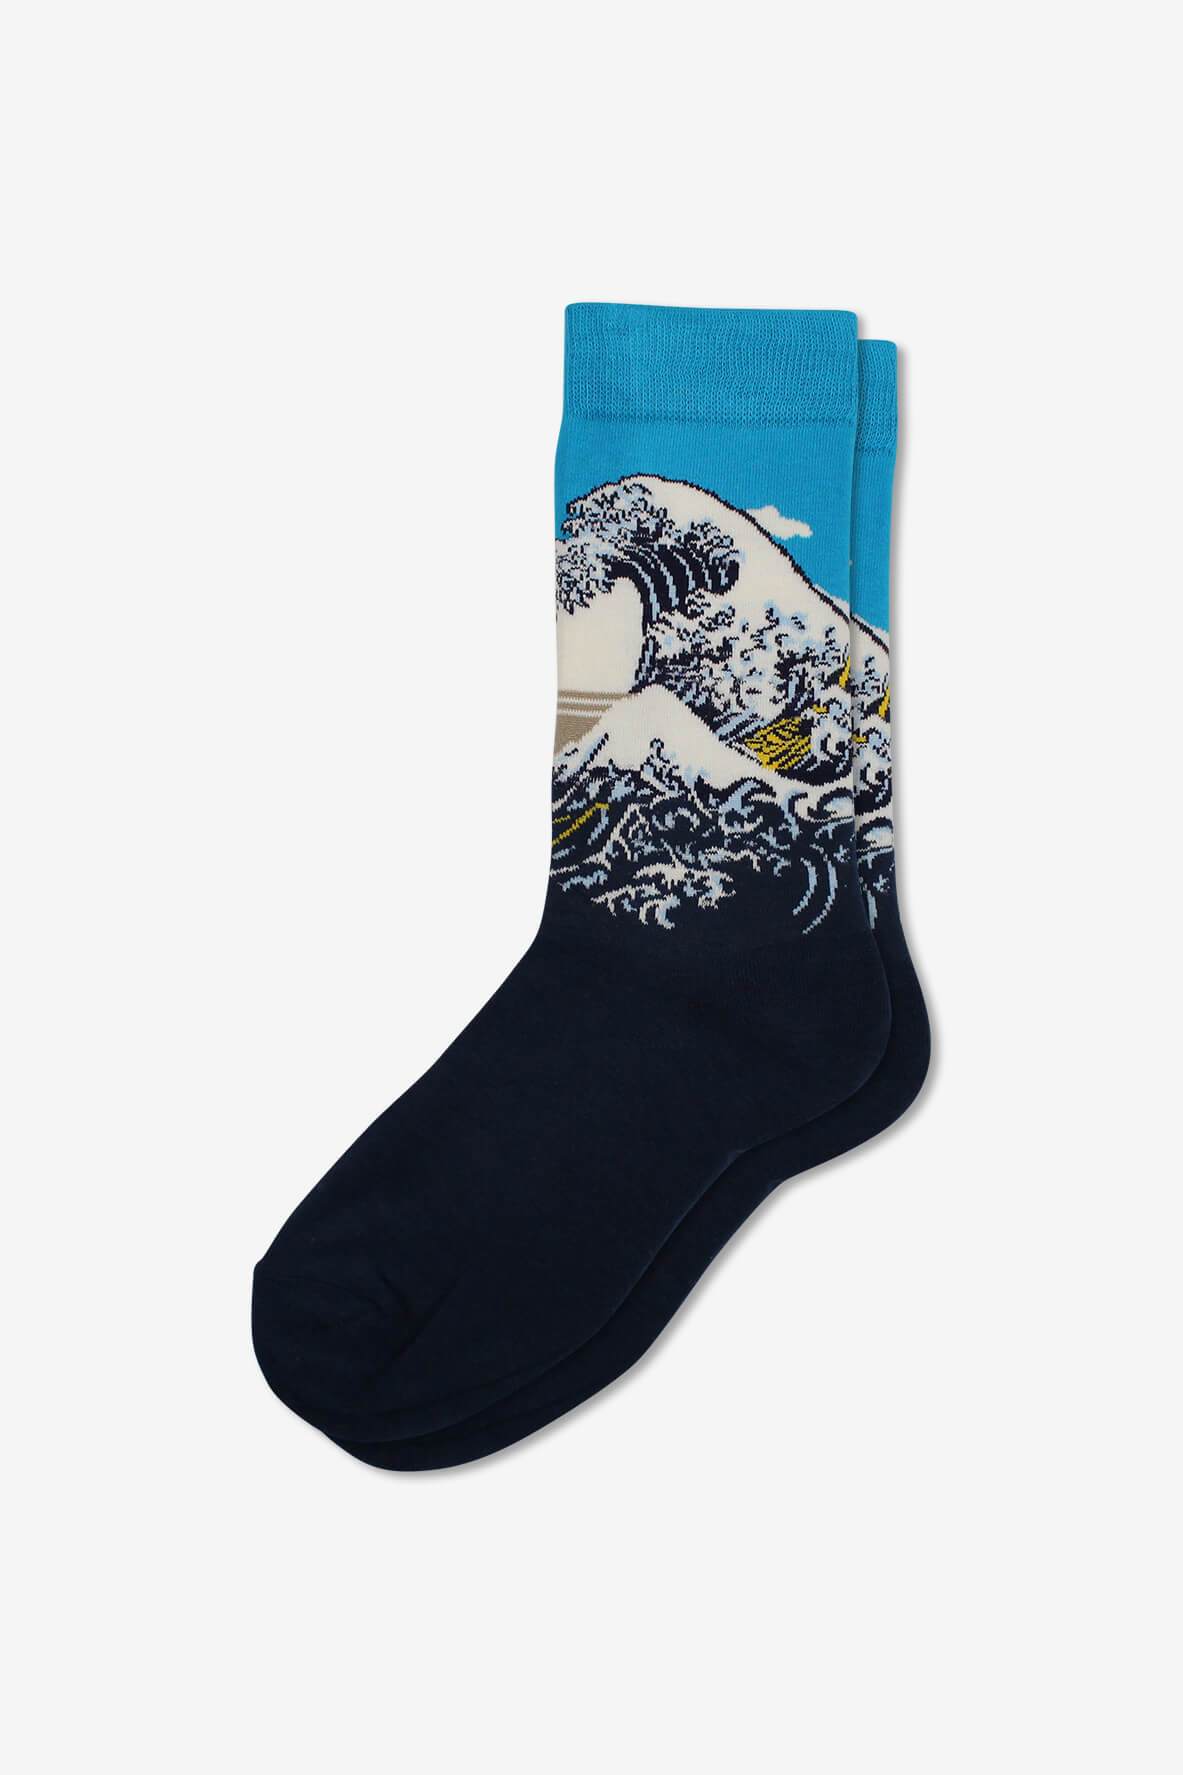 Socks IMG_5312, socks, GoTie